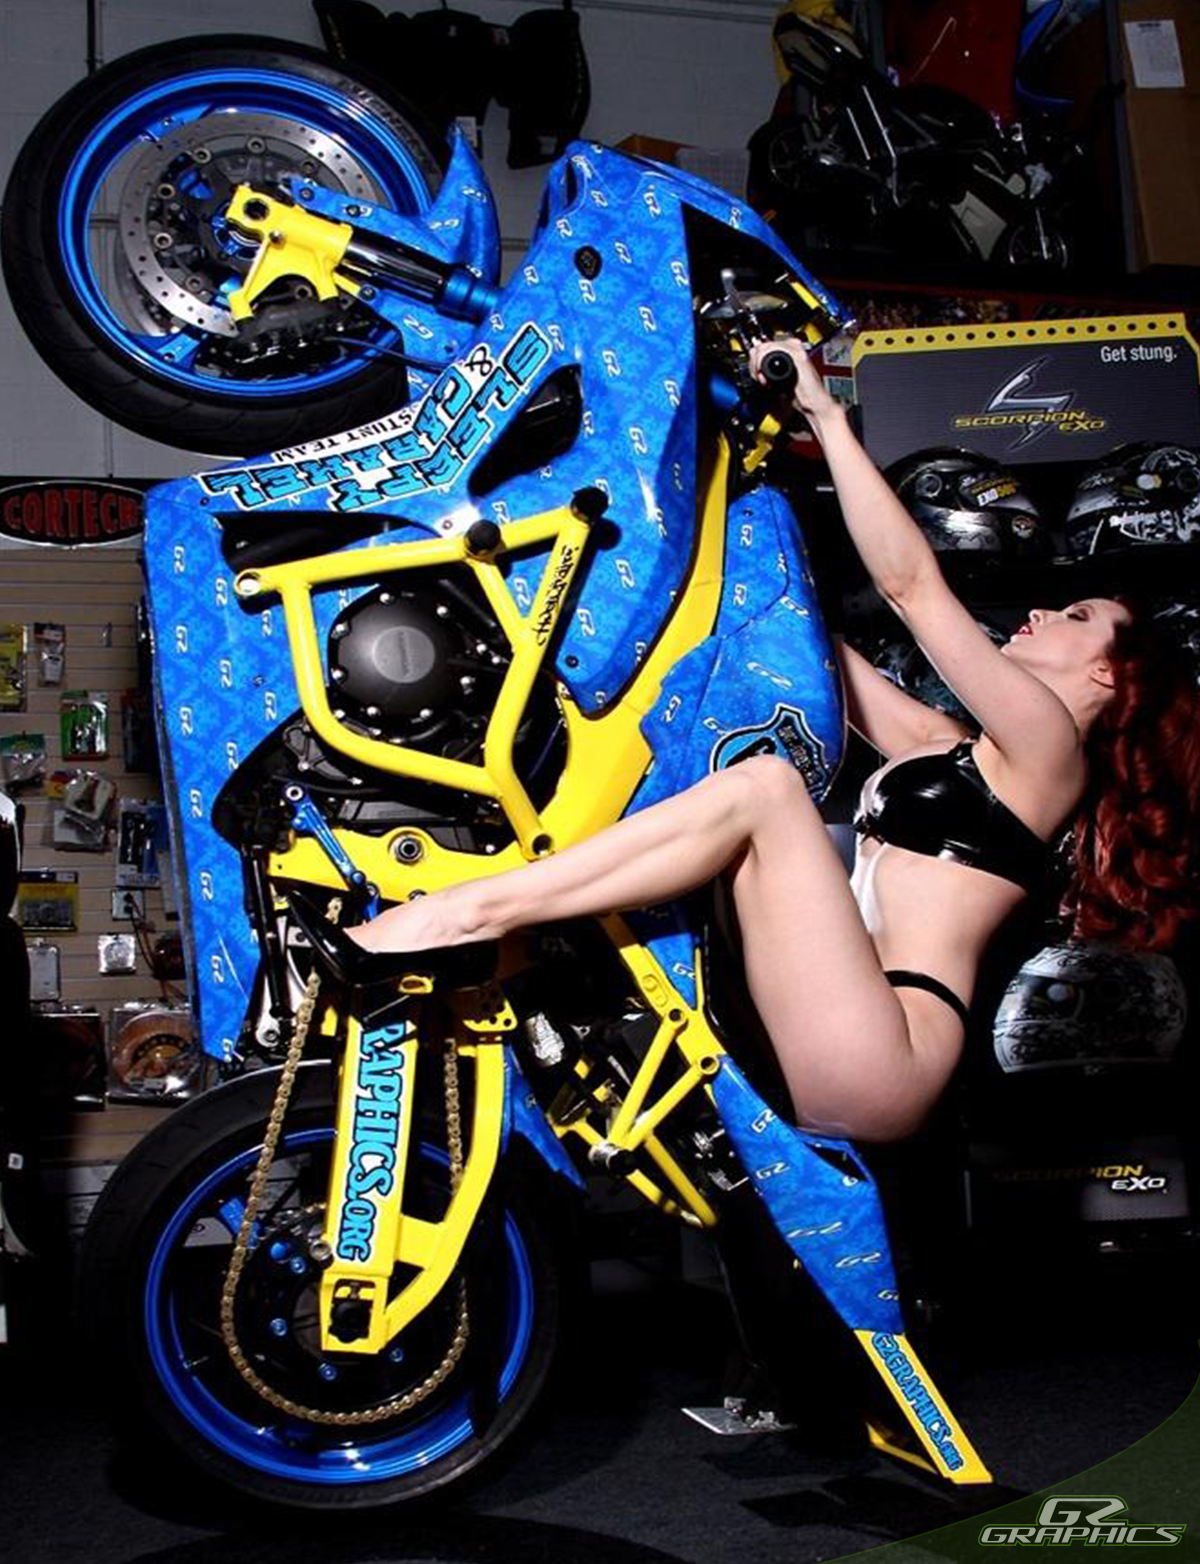 55 Motorcycle wraps ideas  motorcycle wraps custom sport bikes